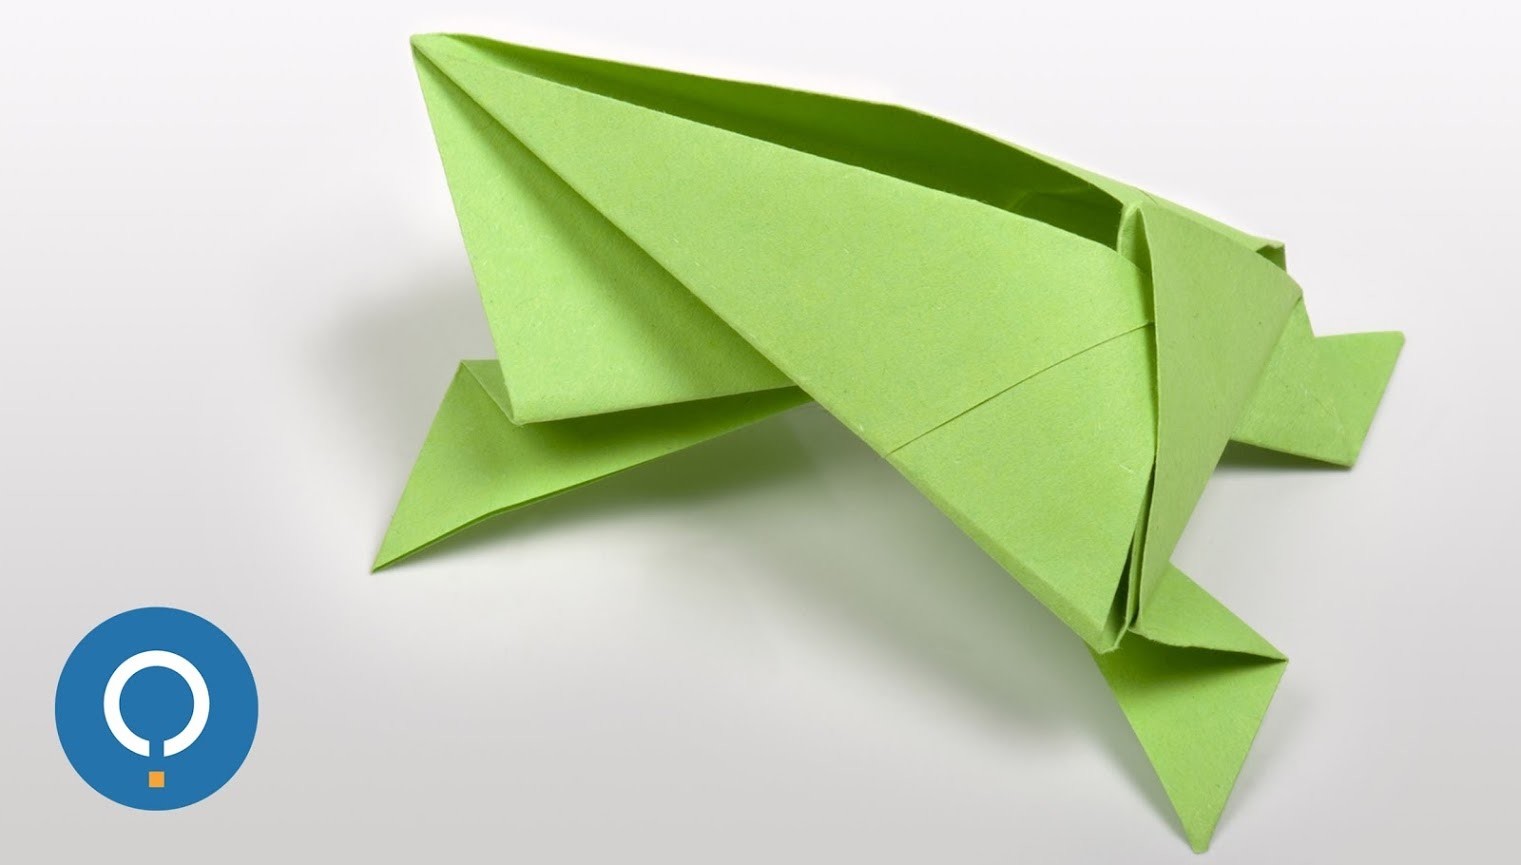 Полезные оригами: Схемы сборки оригами предметов | Оригами